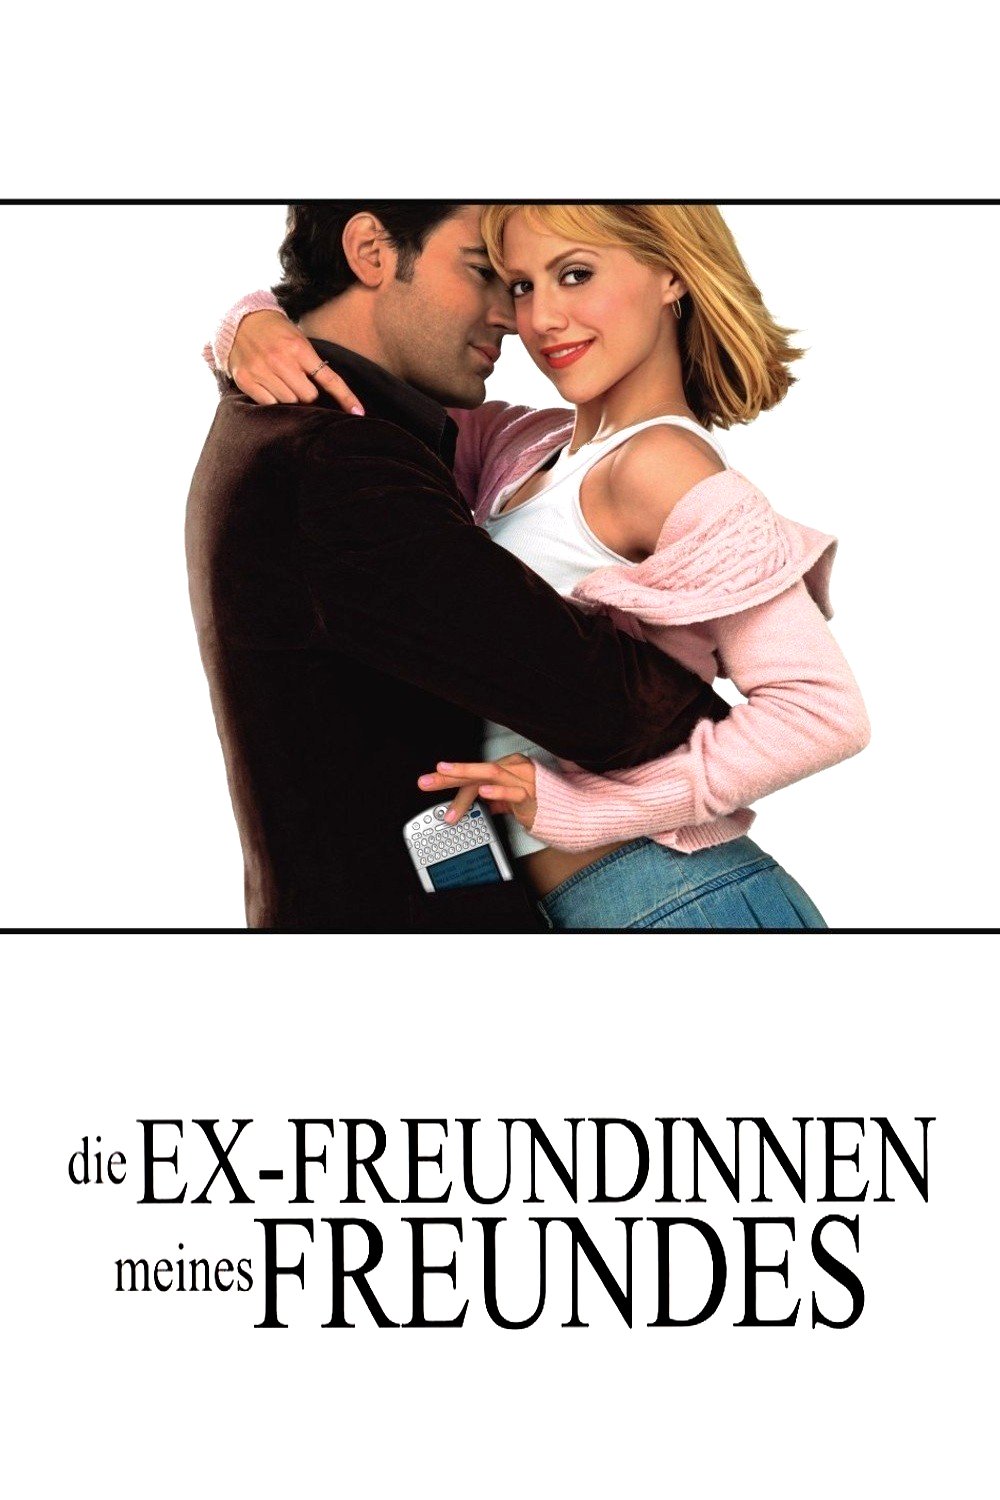 Plakat von "Die Ex-Freundinnen meines Freundes"